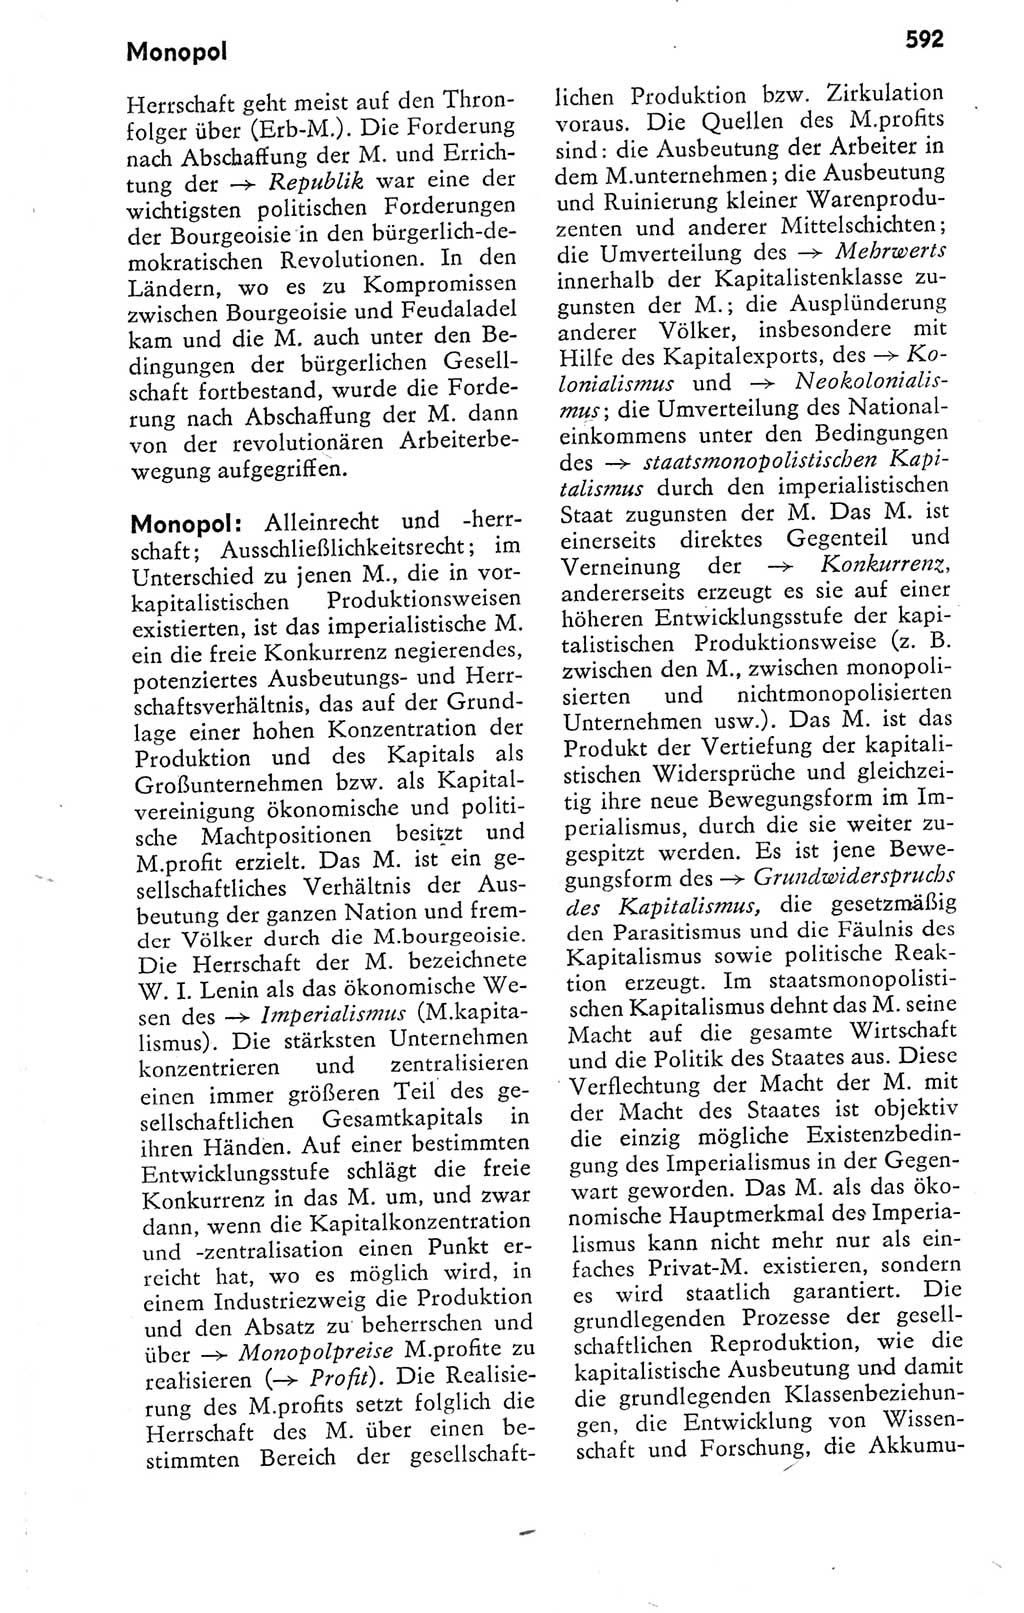 Kleines politisches Wörterbuch [Deutsche Demokratische Republik (DDR)] 1978, Seite 592 (Kl. pol. Wb. DDR 1978, S. 592)